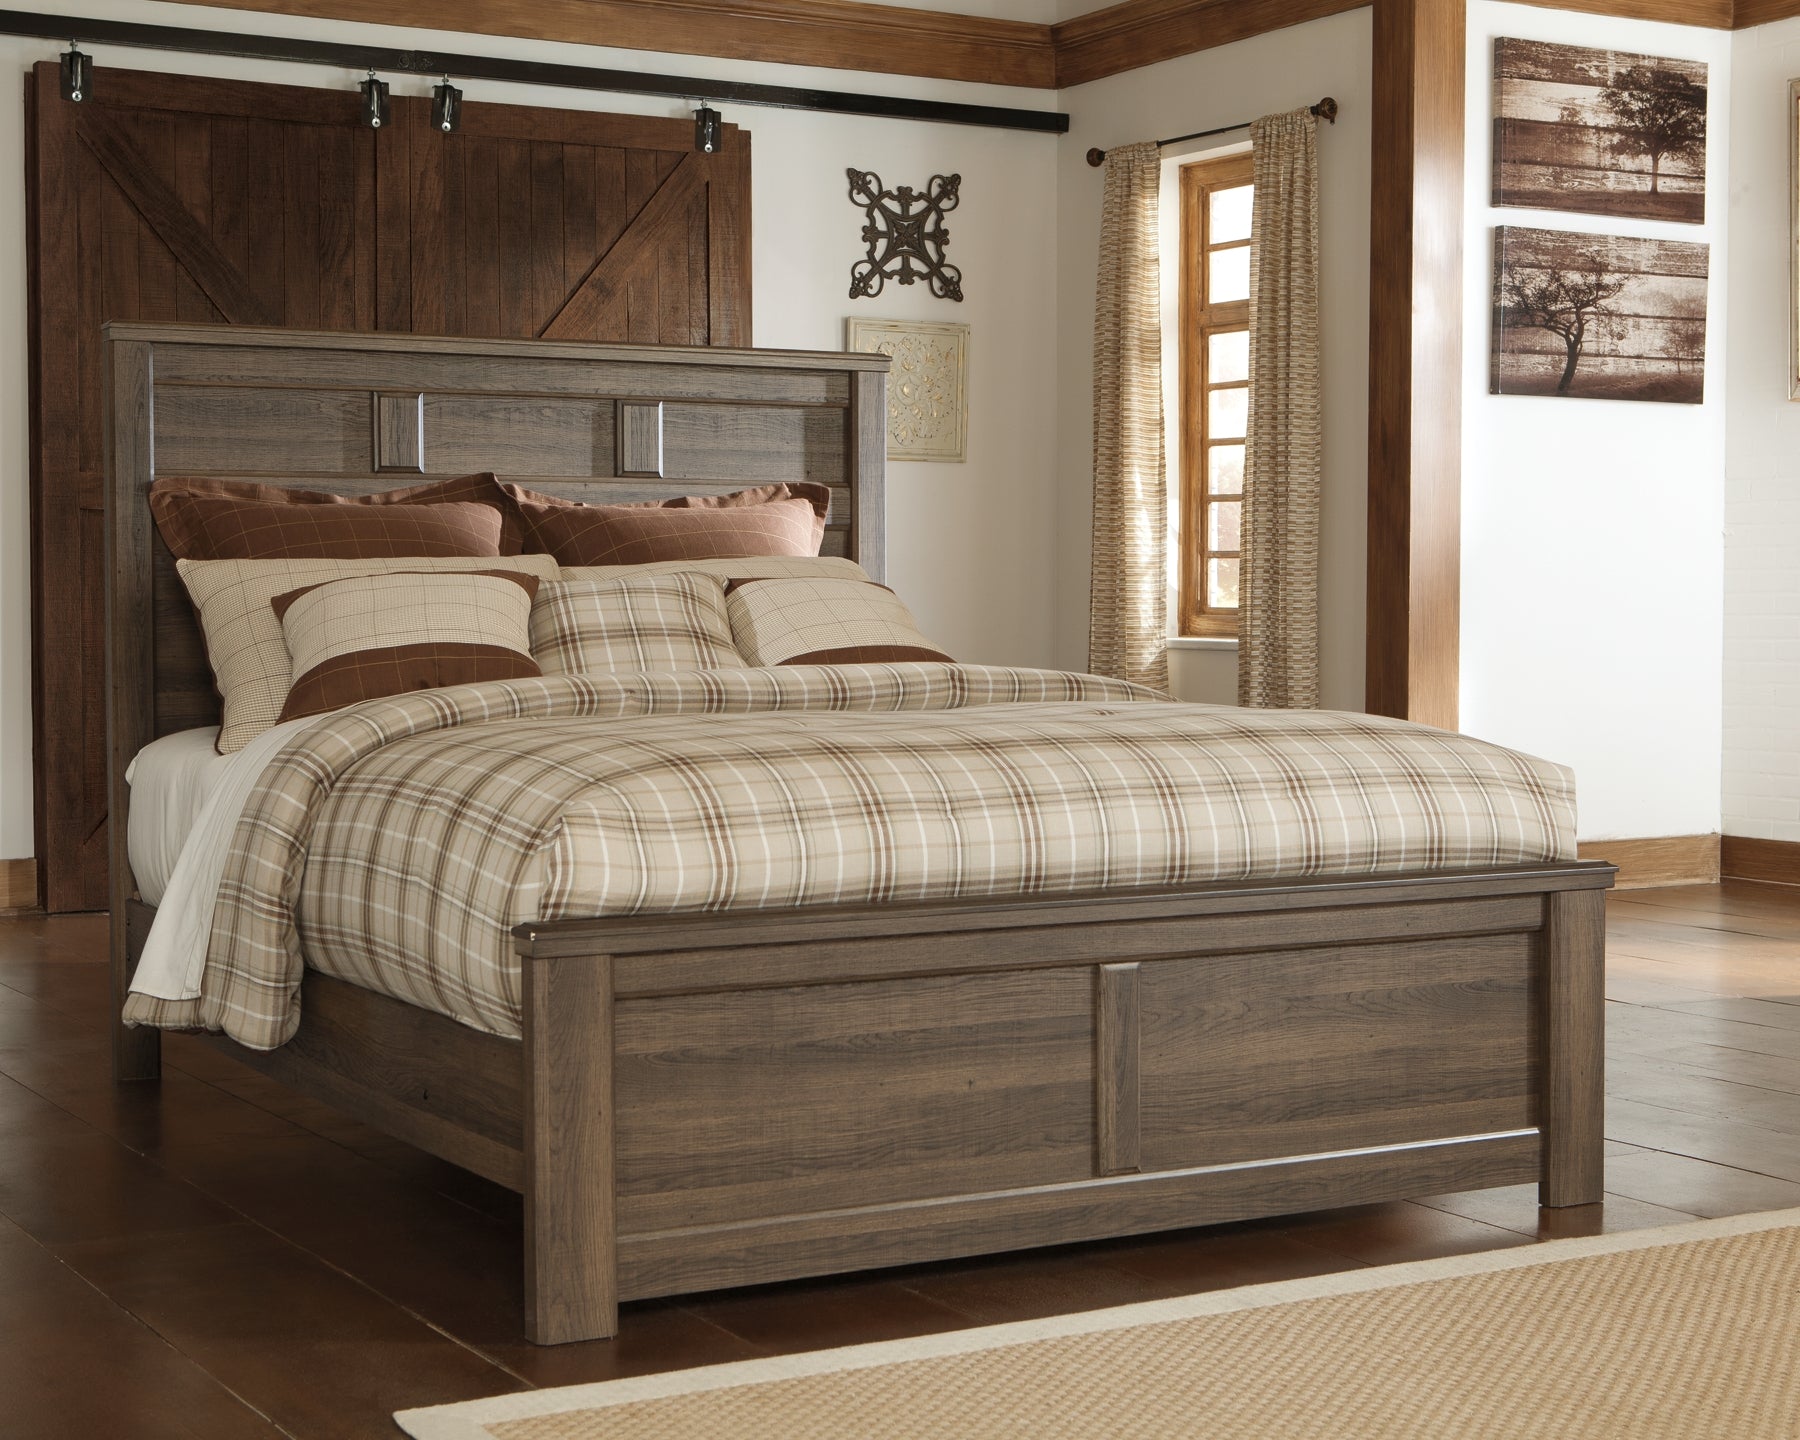 Juararo Queen Panel Bed with Mirrored Dresser and 2 Nightstands Wilson Furniture (OH)  in Bridgeport, Ohio. Serving Bridgeport, Yorkville, Bellaire, & Avondale